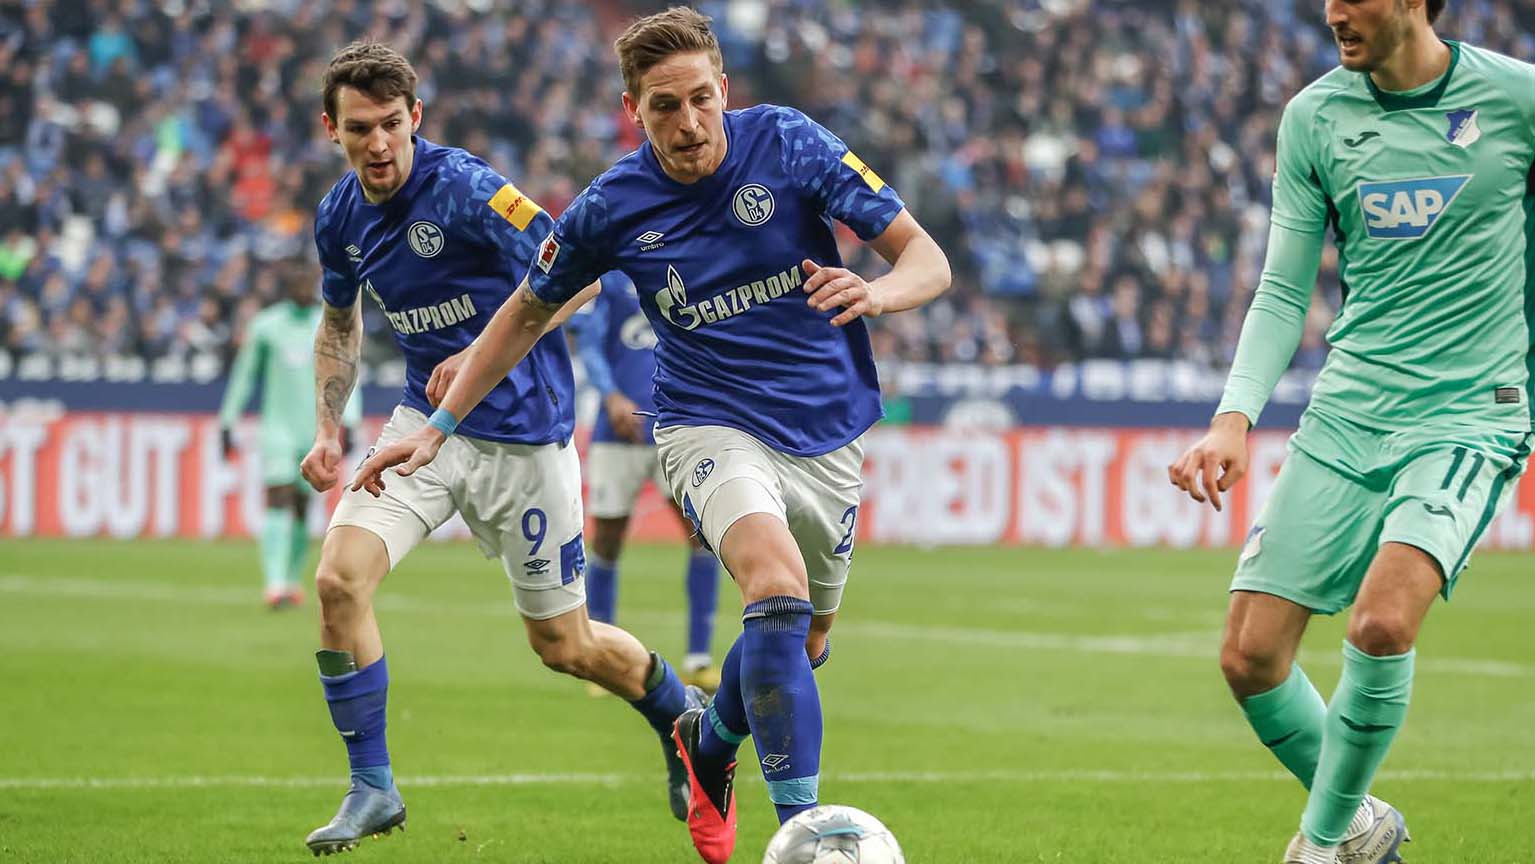 Nhận định kèo bóng đá: Hoffenheim vs Schalke 04 – 20h30 08/05/2021